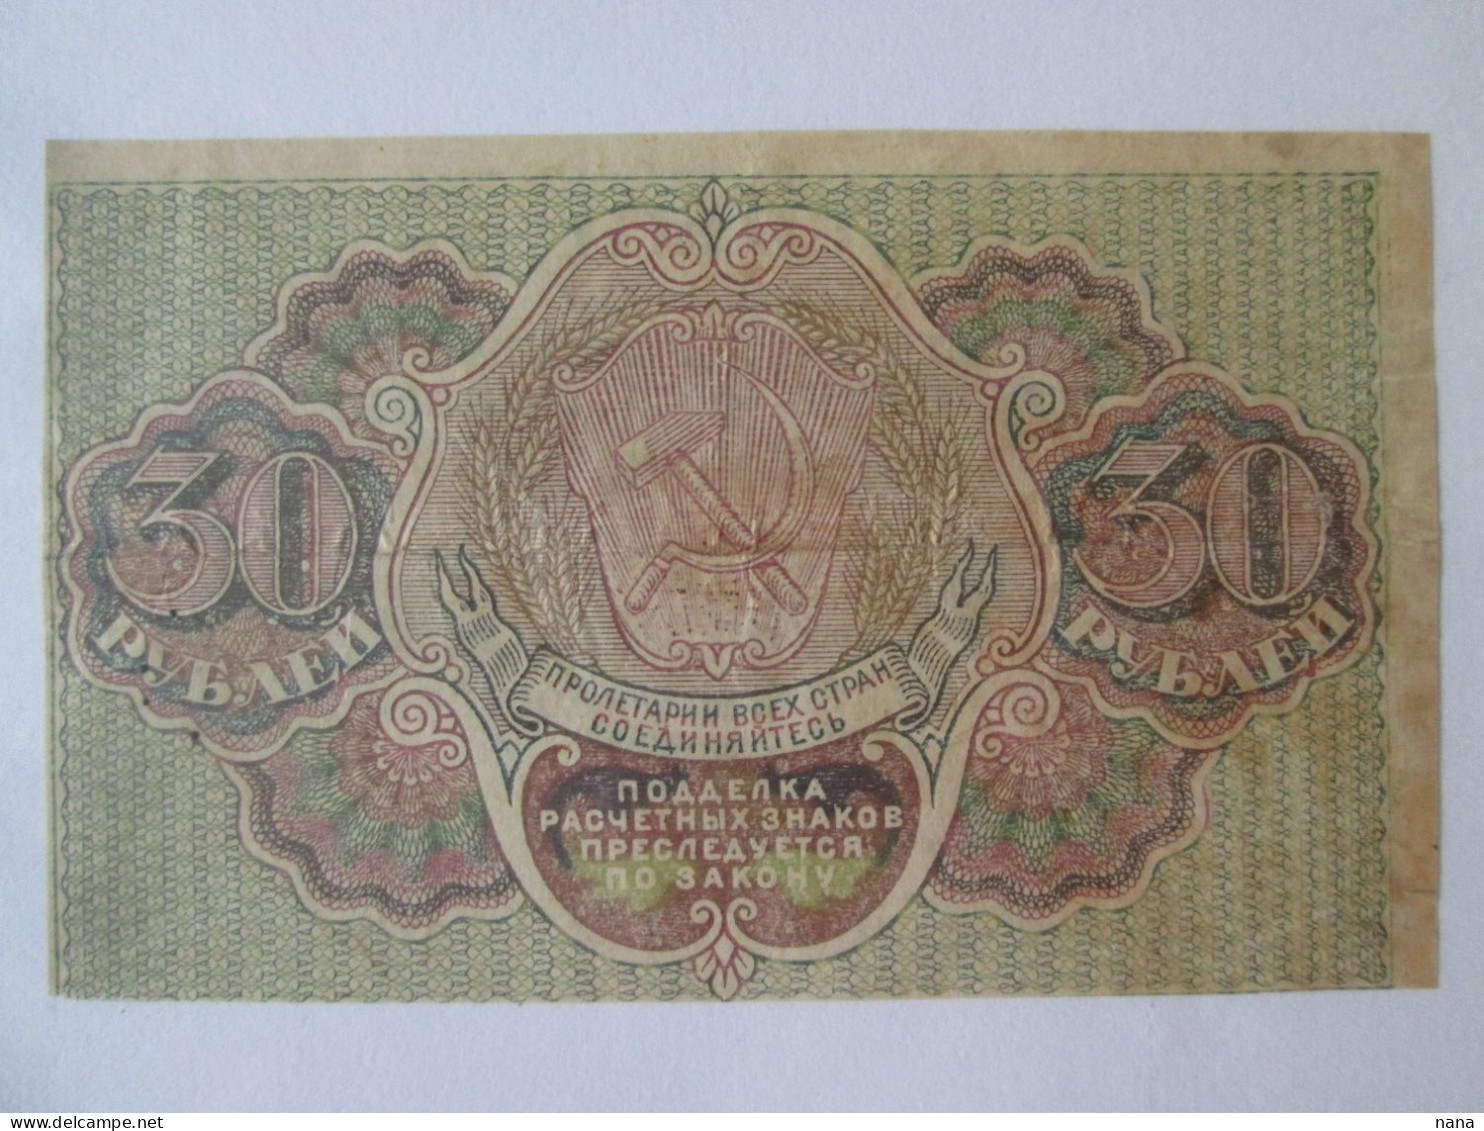 Rare! Russia 30 Rubles 1919 Osipov Exchange Banknote - Russia